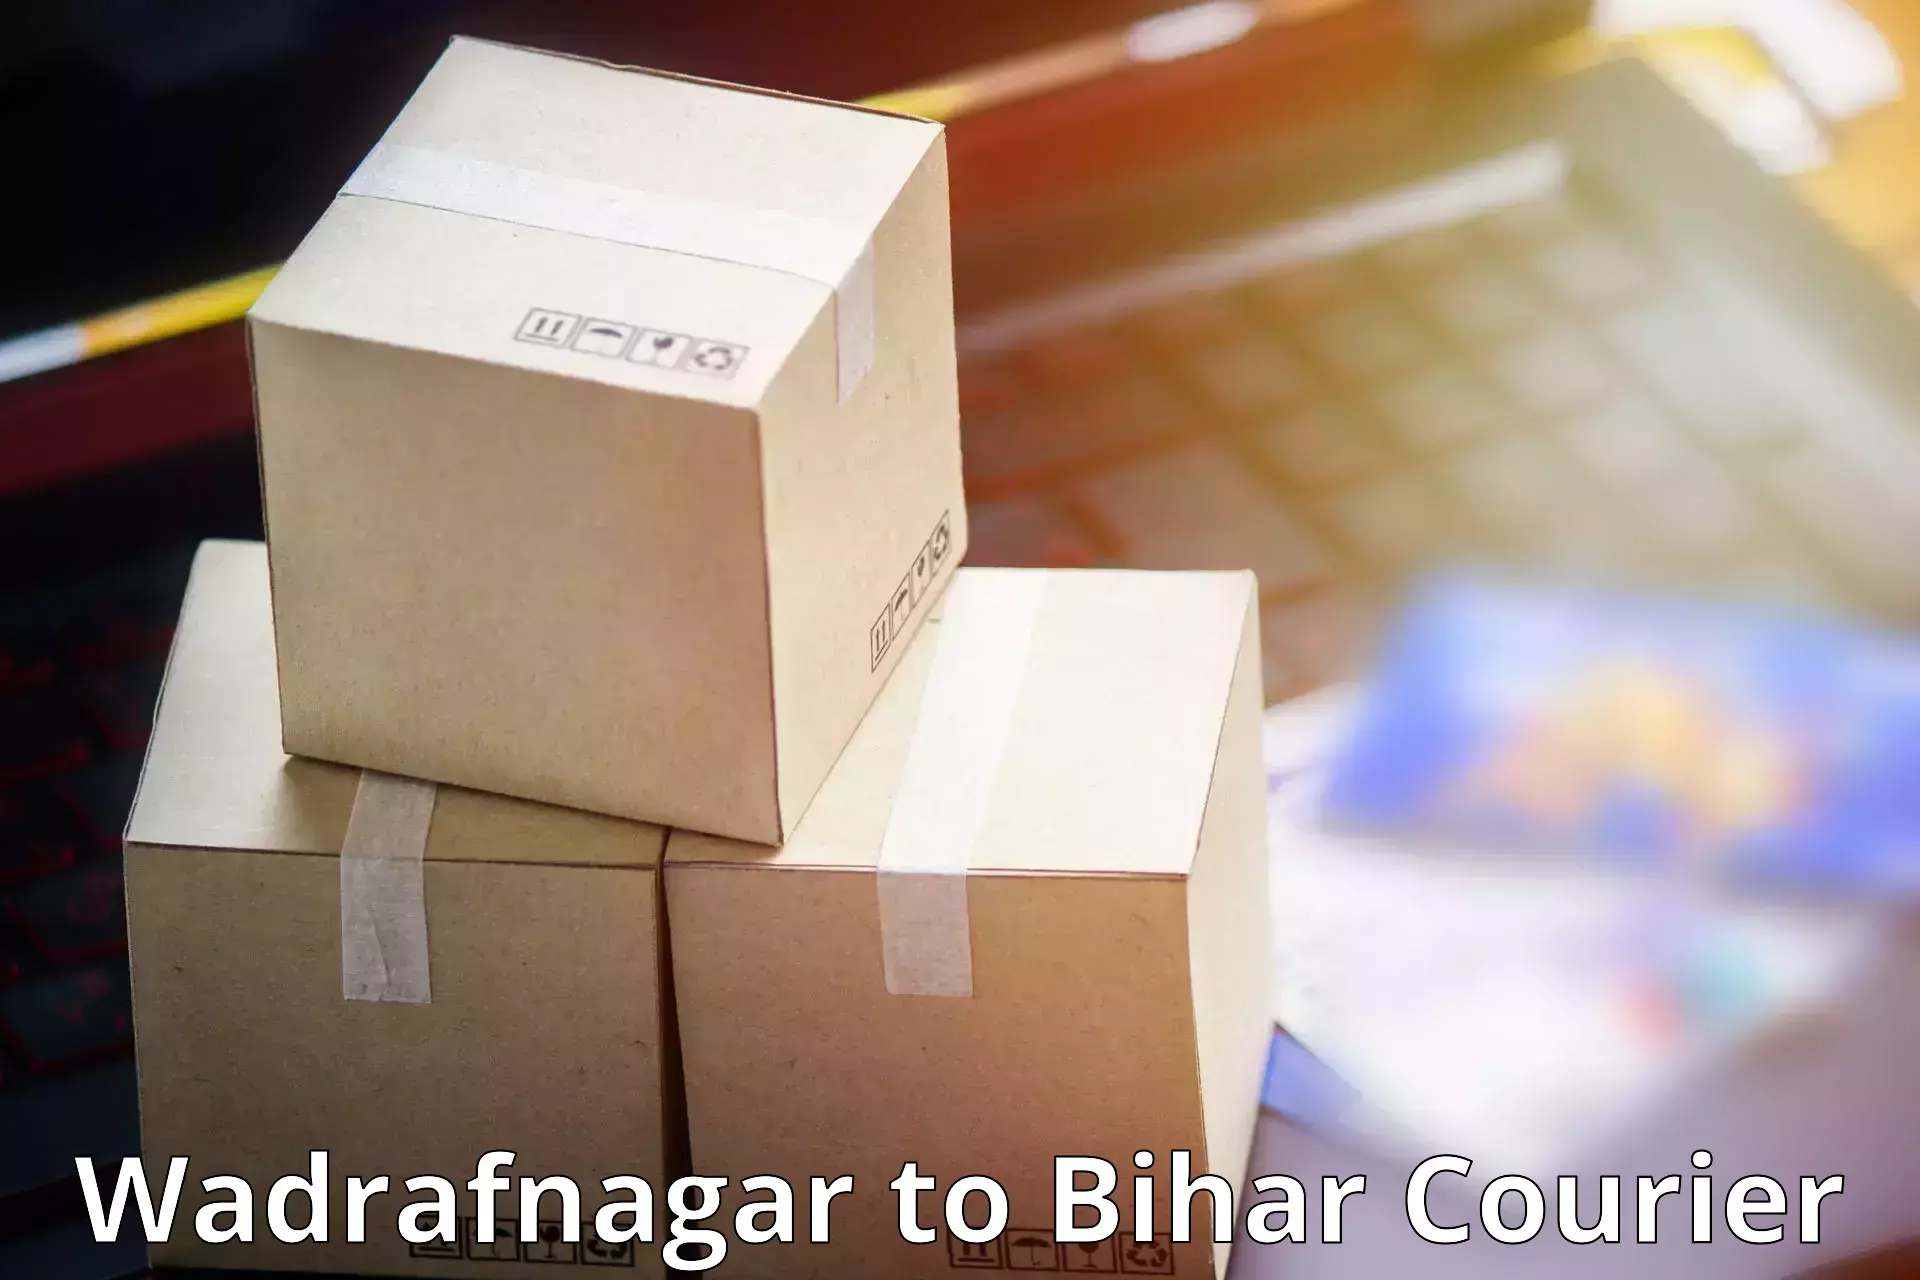 Global delivery options Wadrafnagar to Katihar